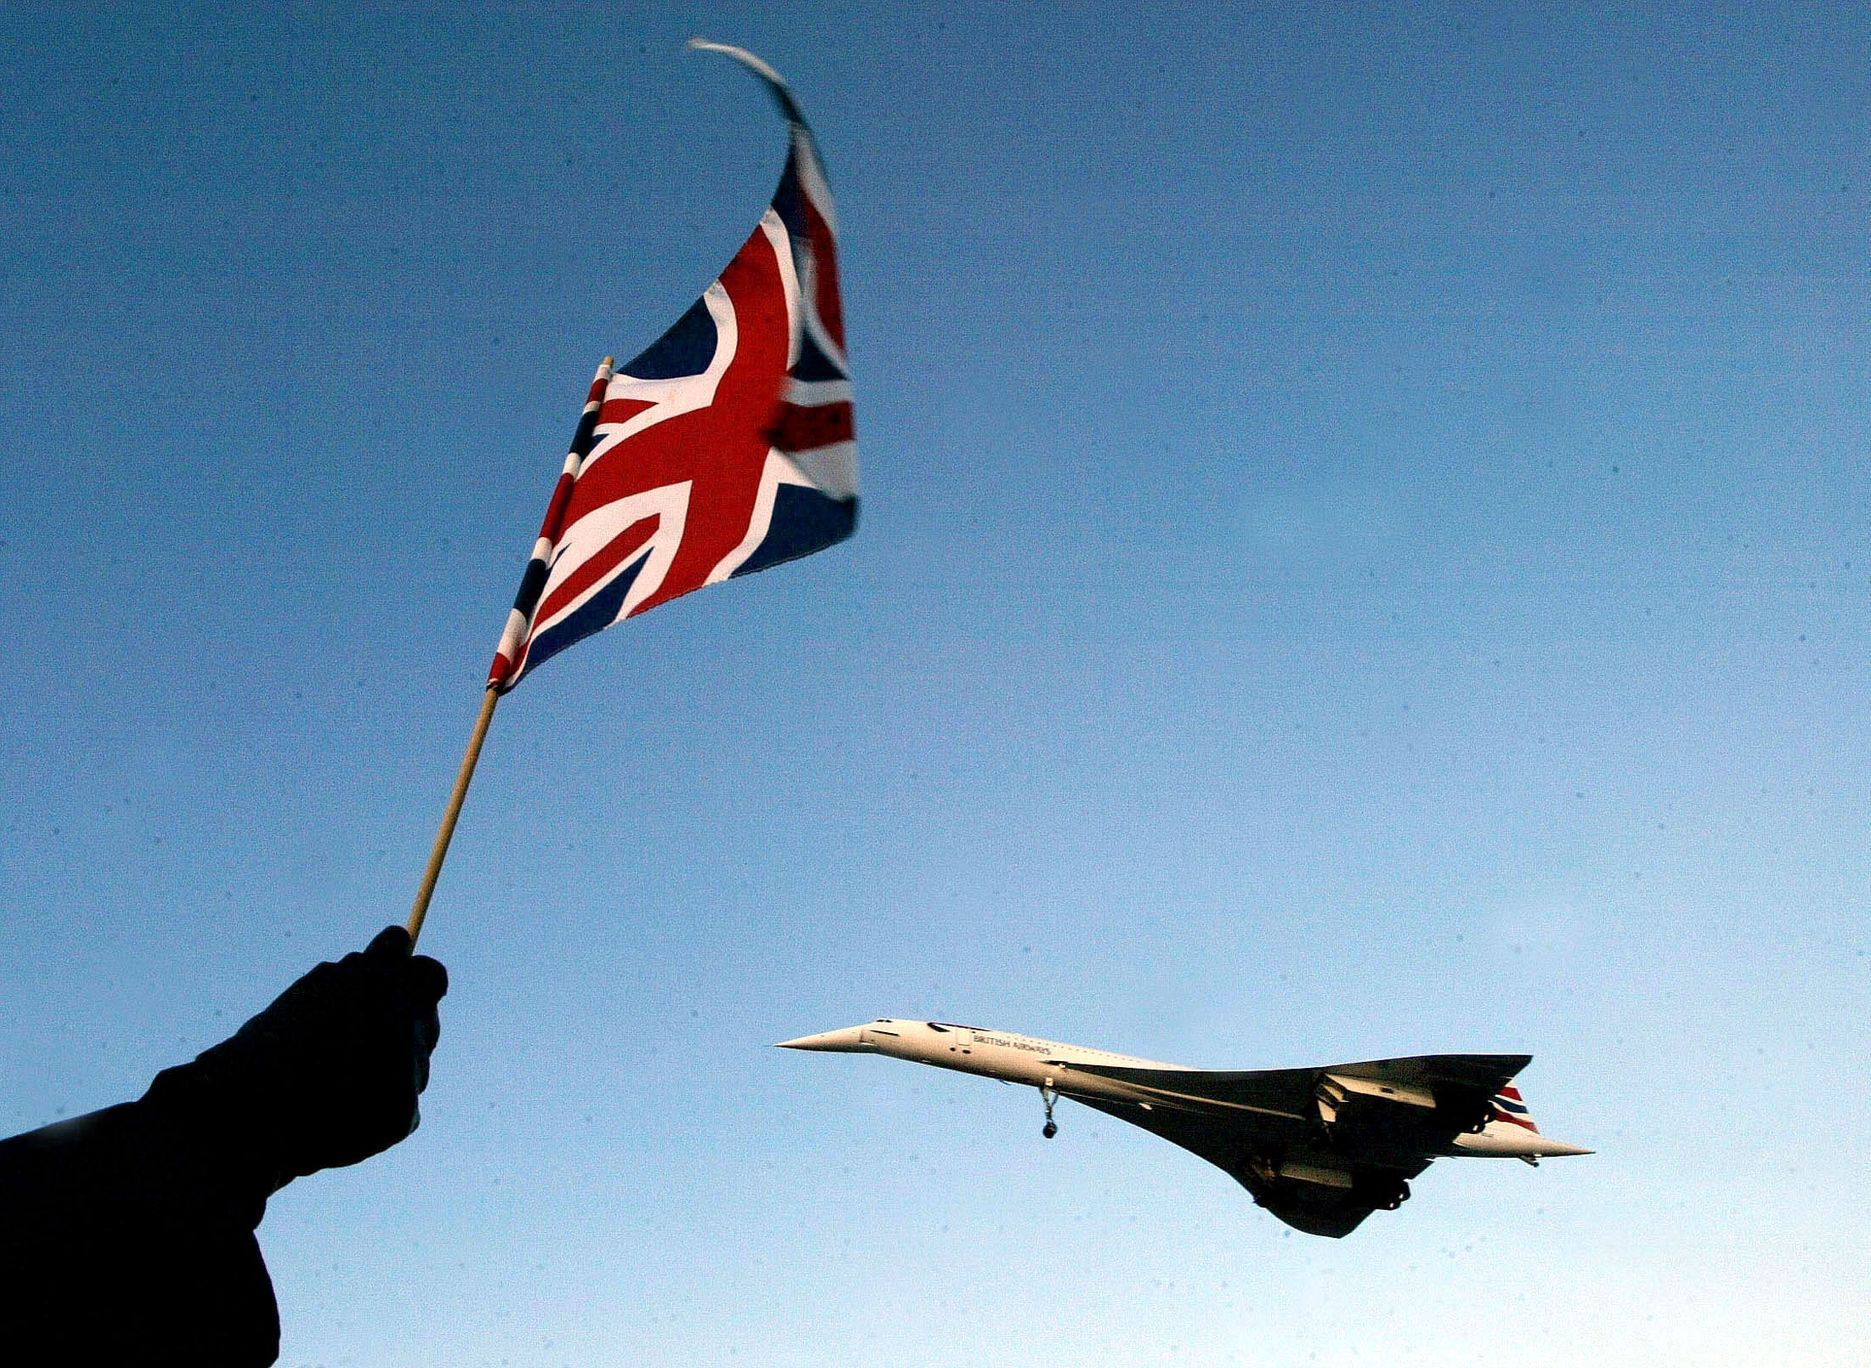 Fotogalerie / Concorde / Reuters